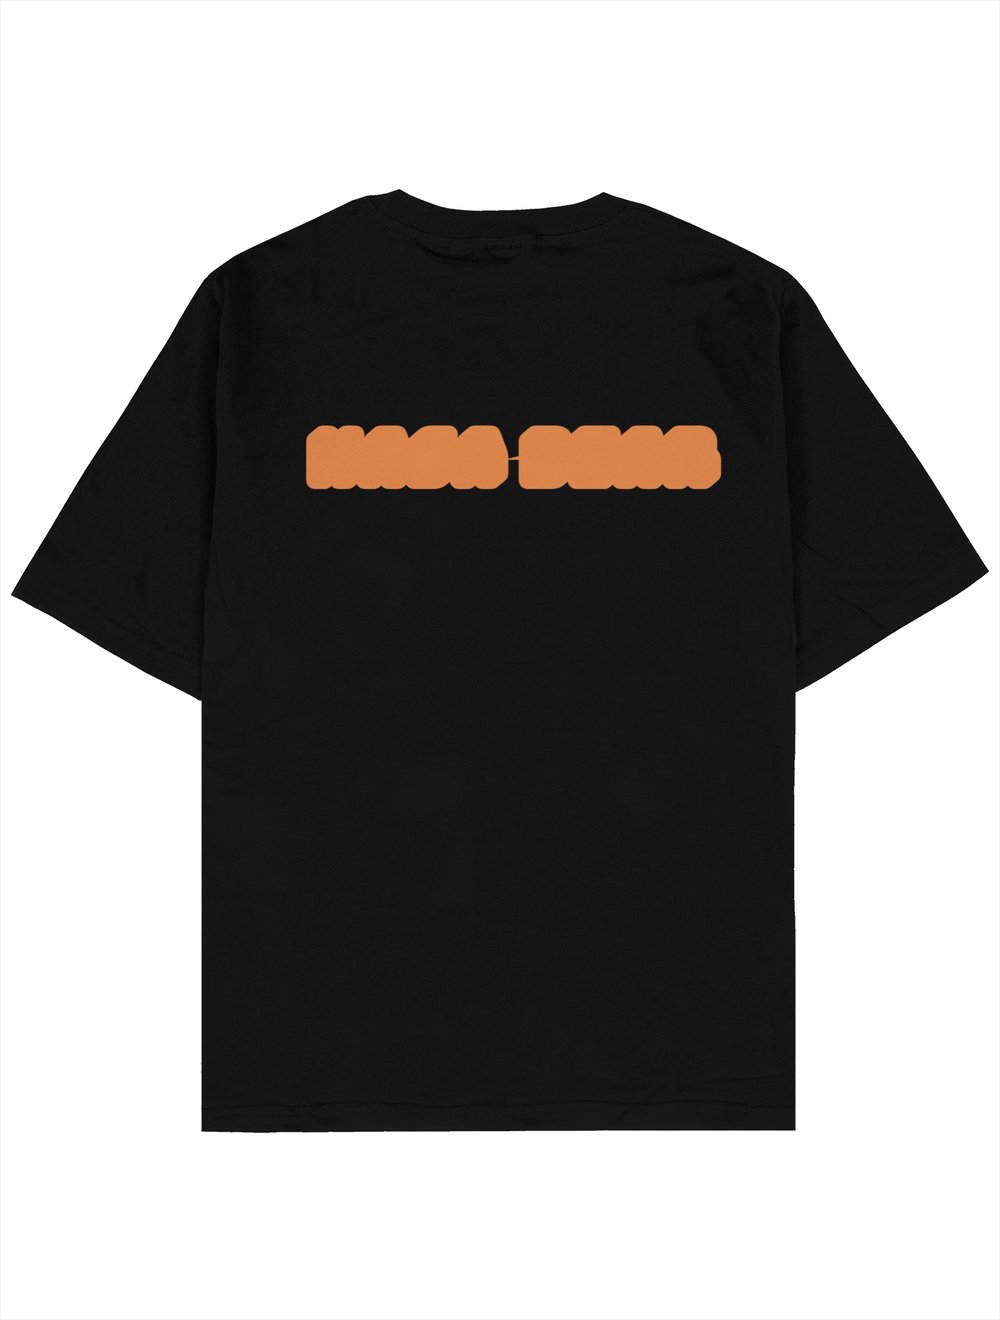 NMC Design Oversize T-Shirt NASA BEAR